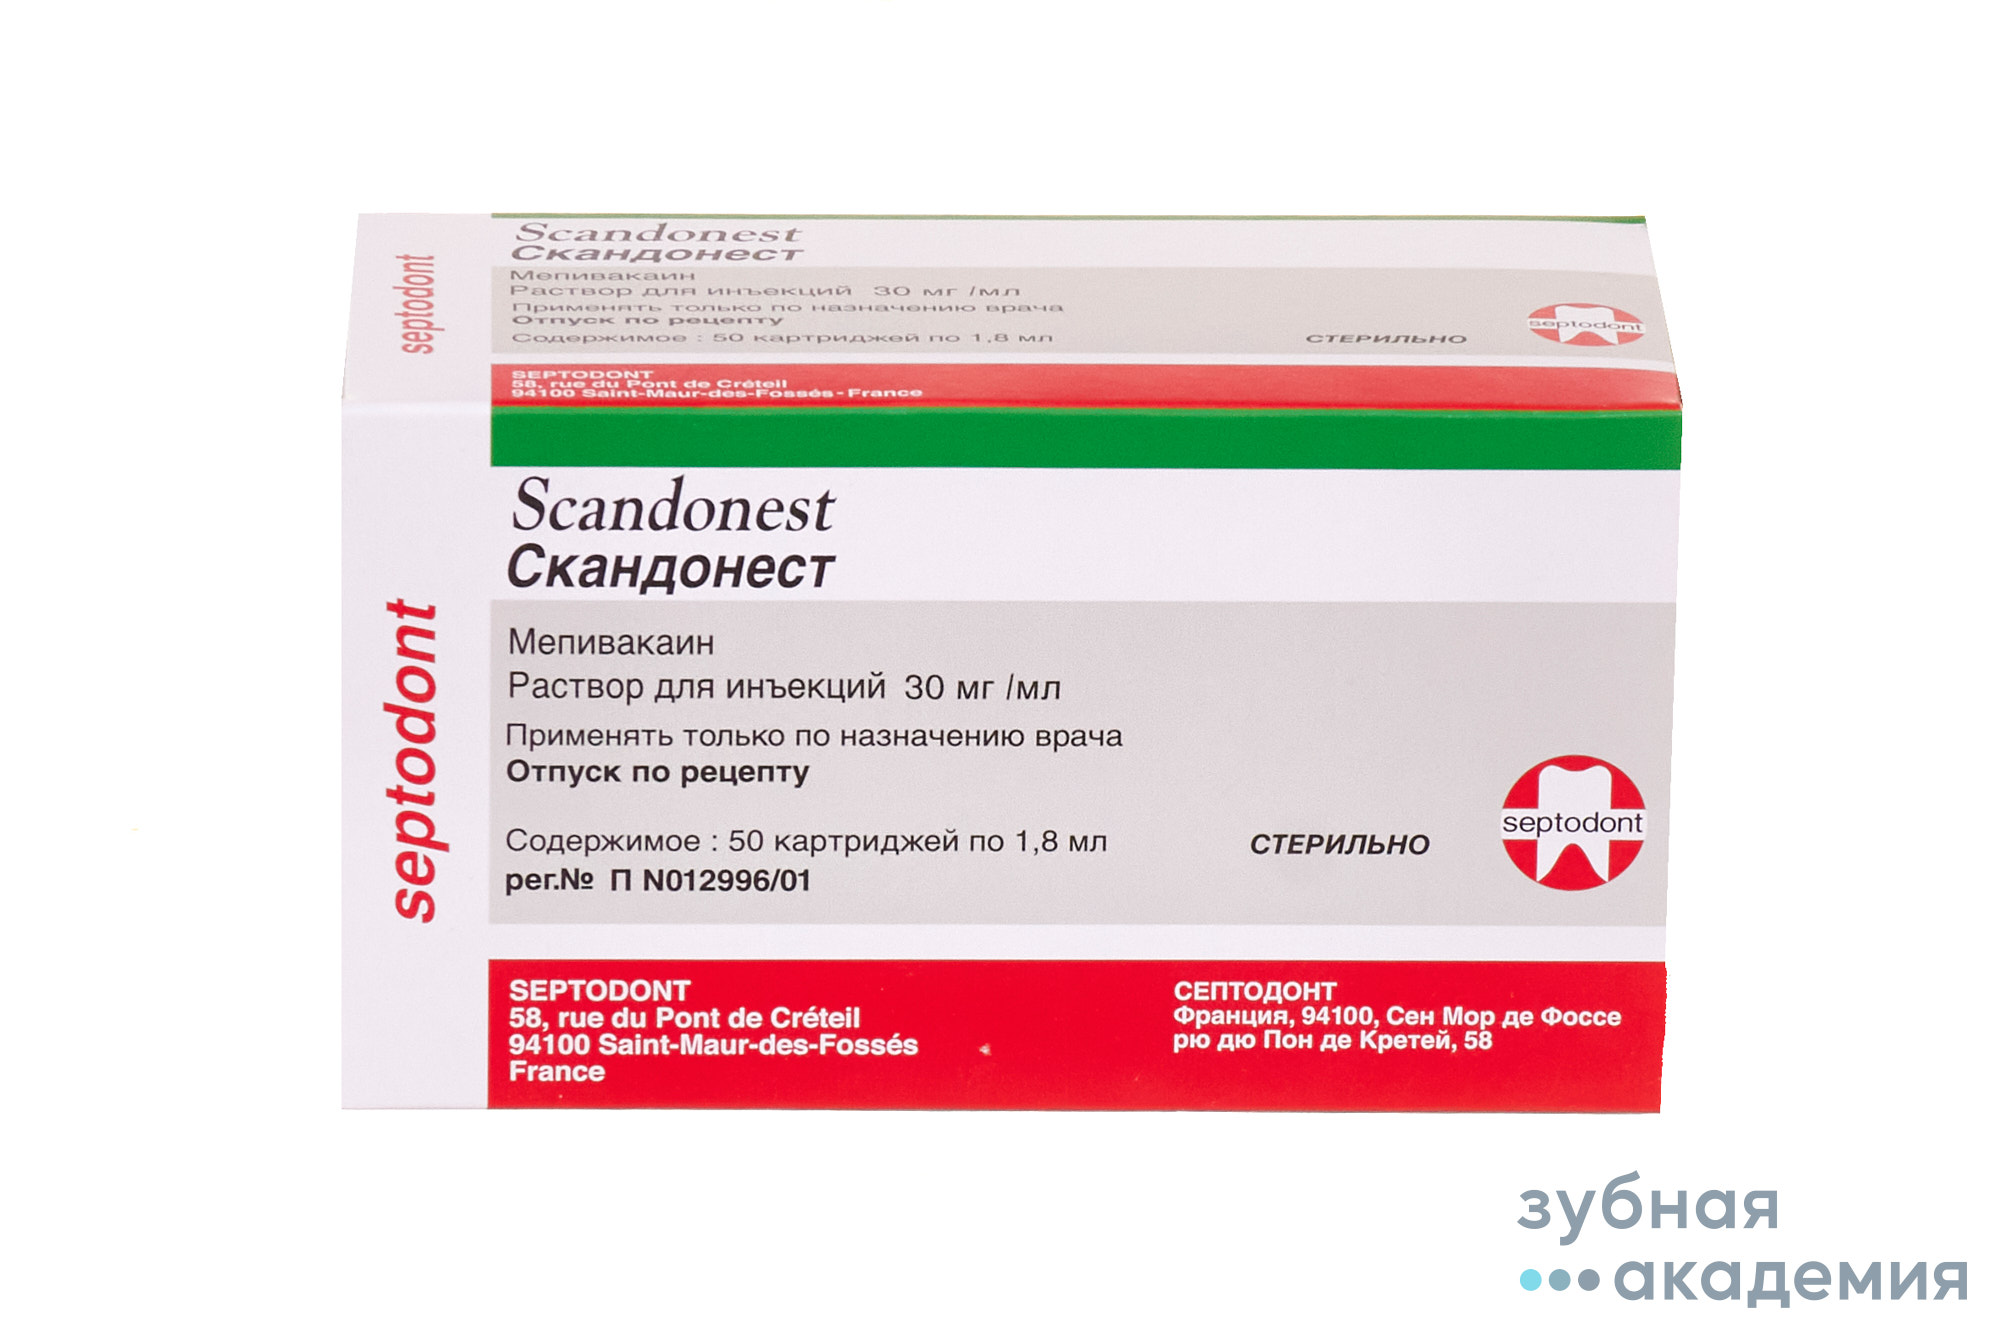 Scandonest / Скандонест 3% анестезия без адреналина (50 х 1,8 мл) /Septodont/ Франция